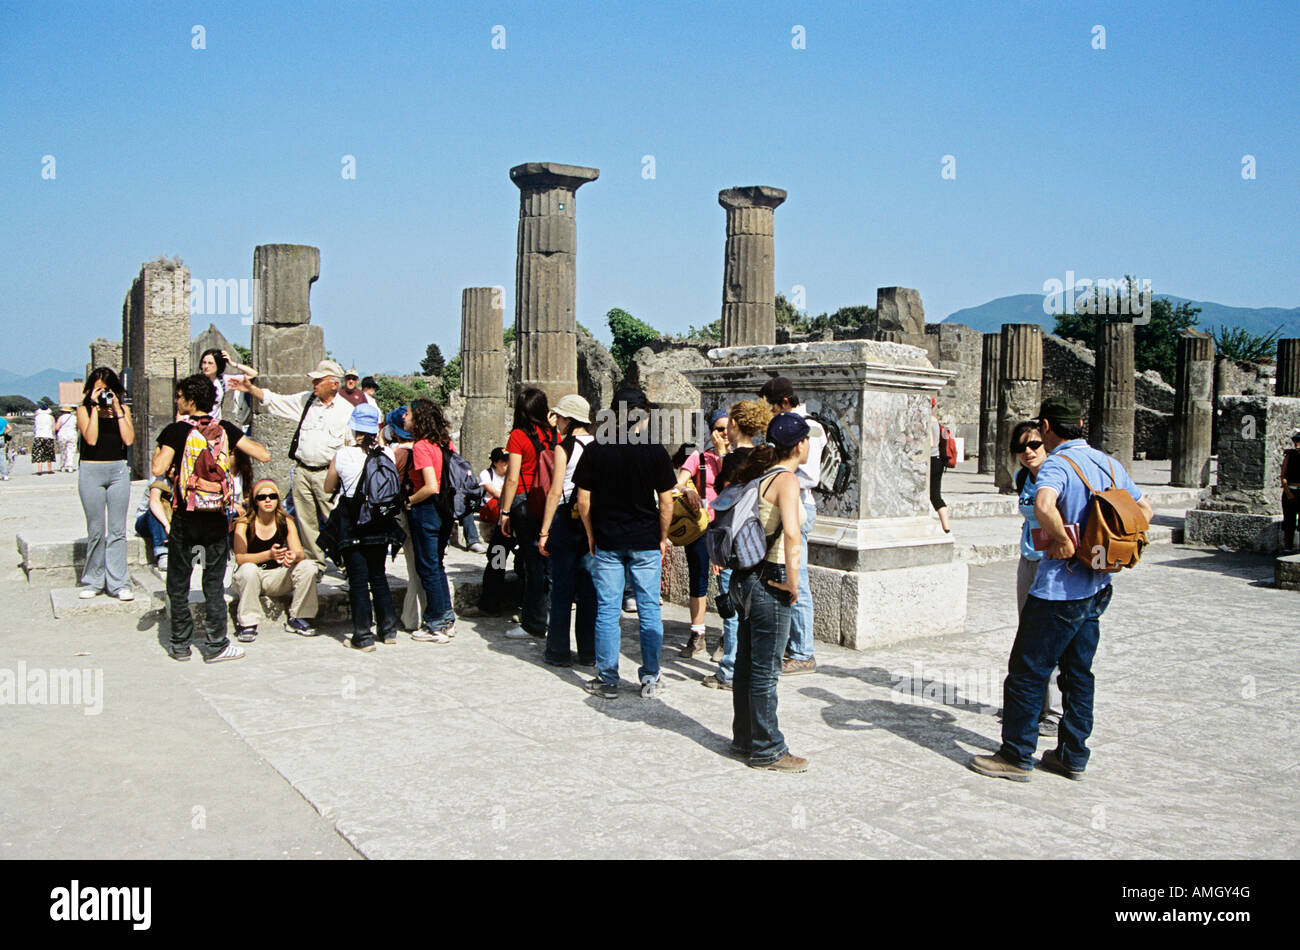 Tourists, Pompeii archaeological site, Pompeii, near Naples, Campania, Italy Stock Photo